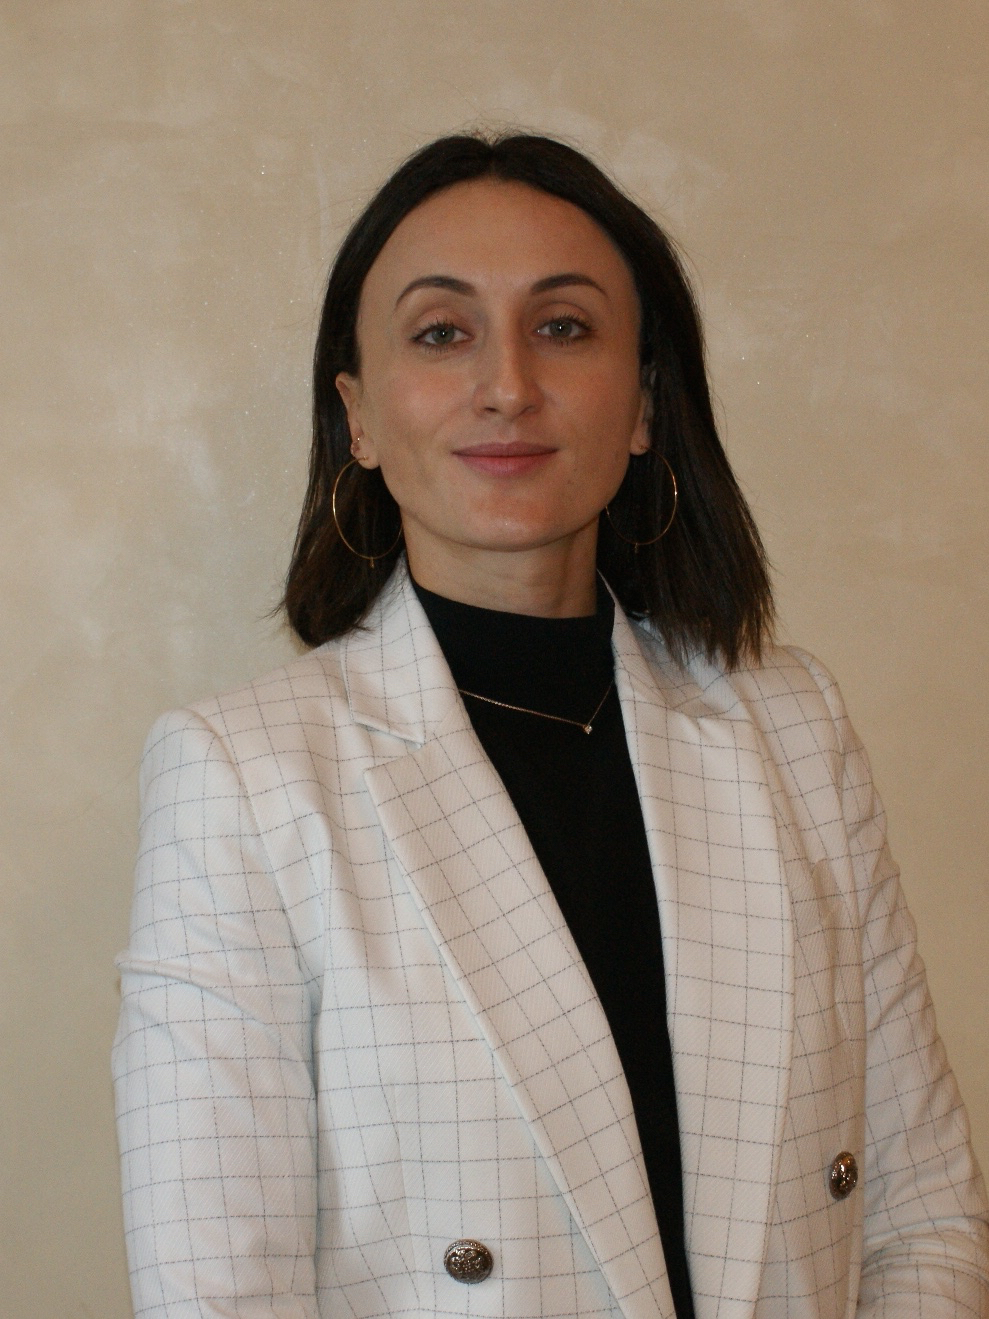 Синельникова Екатерина Викторовна — руководитель бизнеса ипотечного кредитования Банка «Санкт-Петербург»